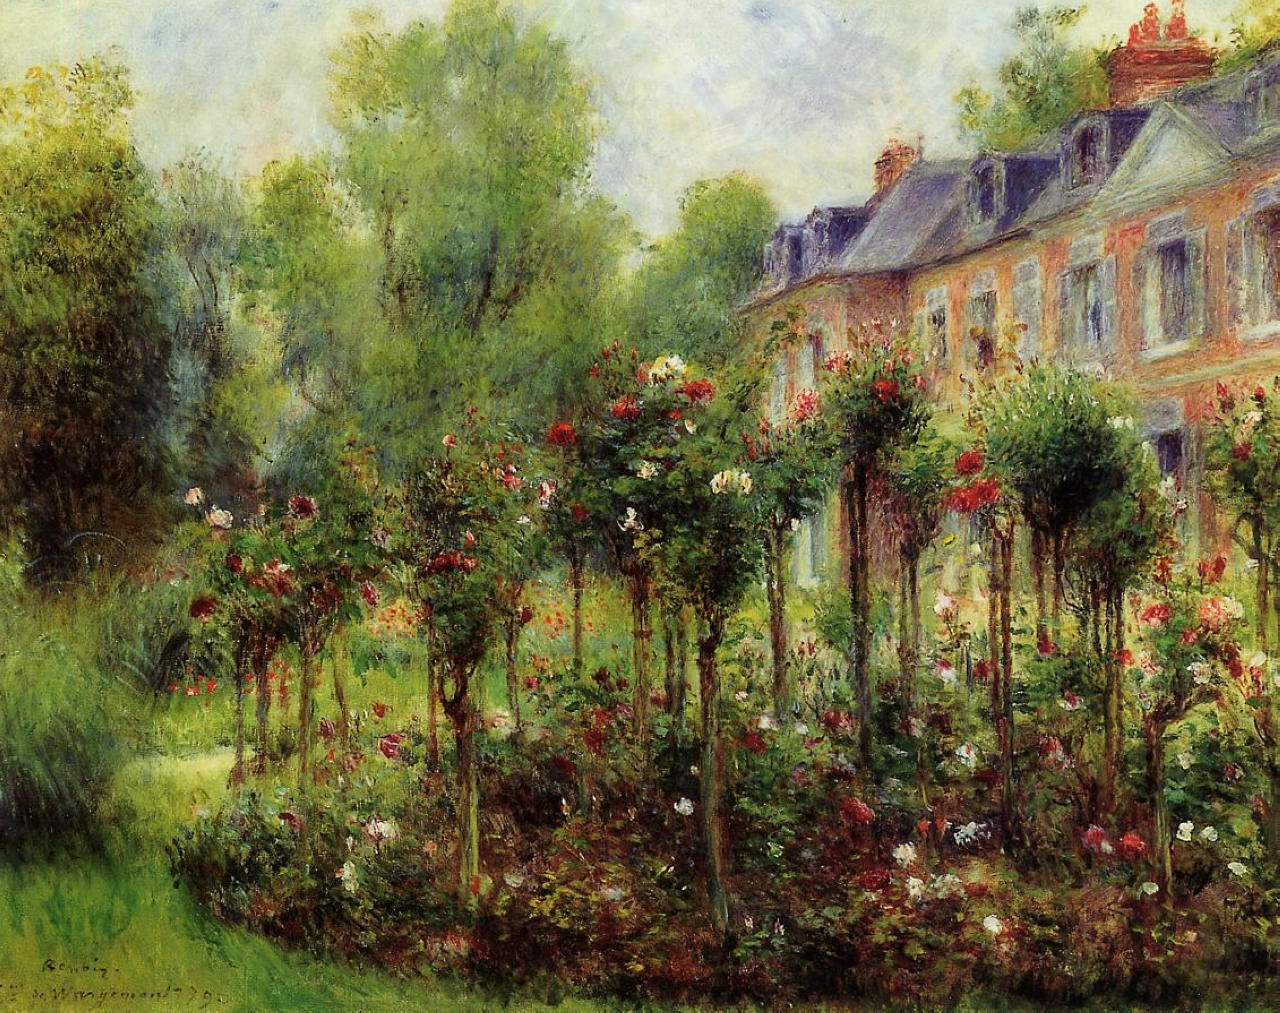 Pierre+Auguste+Renoir-1841-1-19 (738).jpg